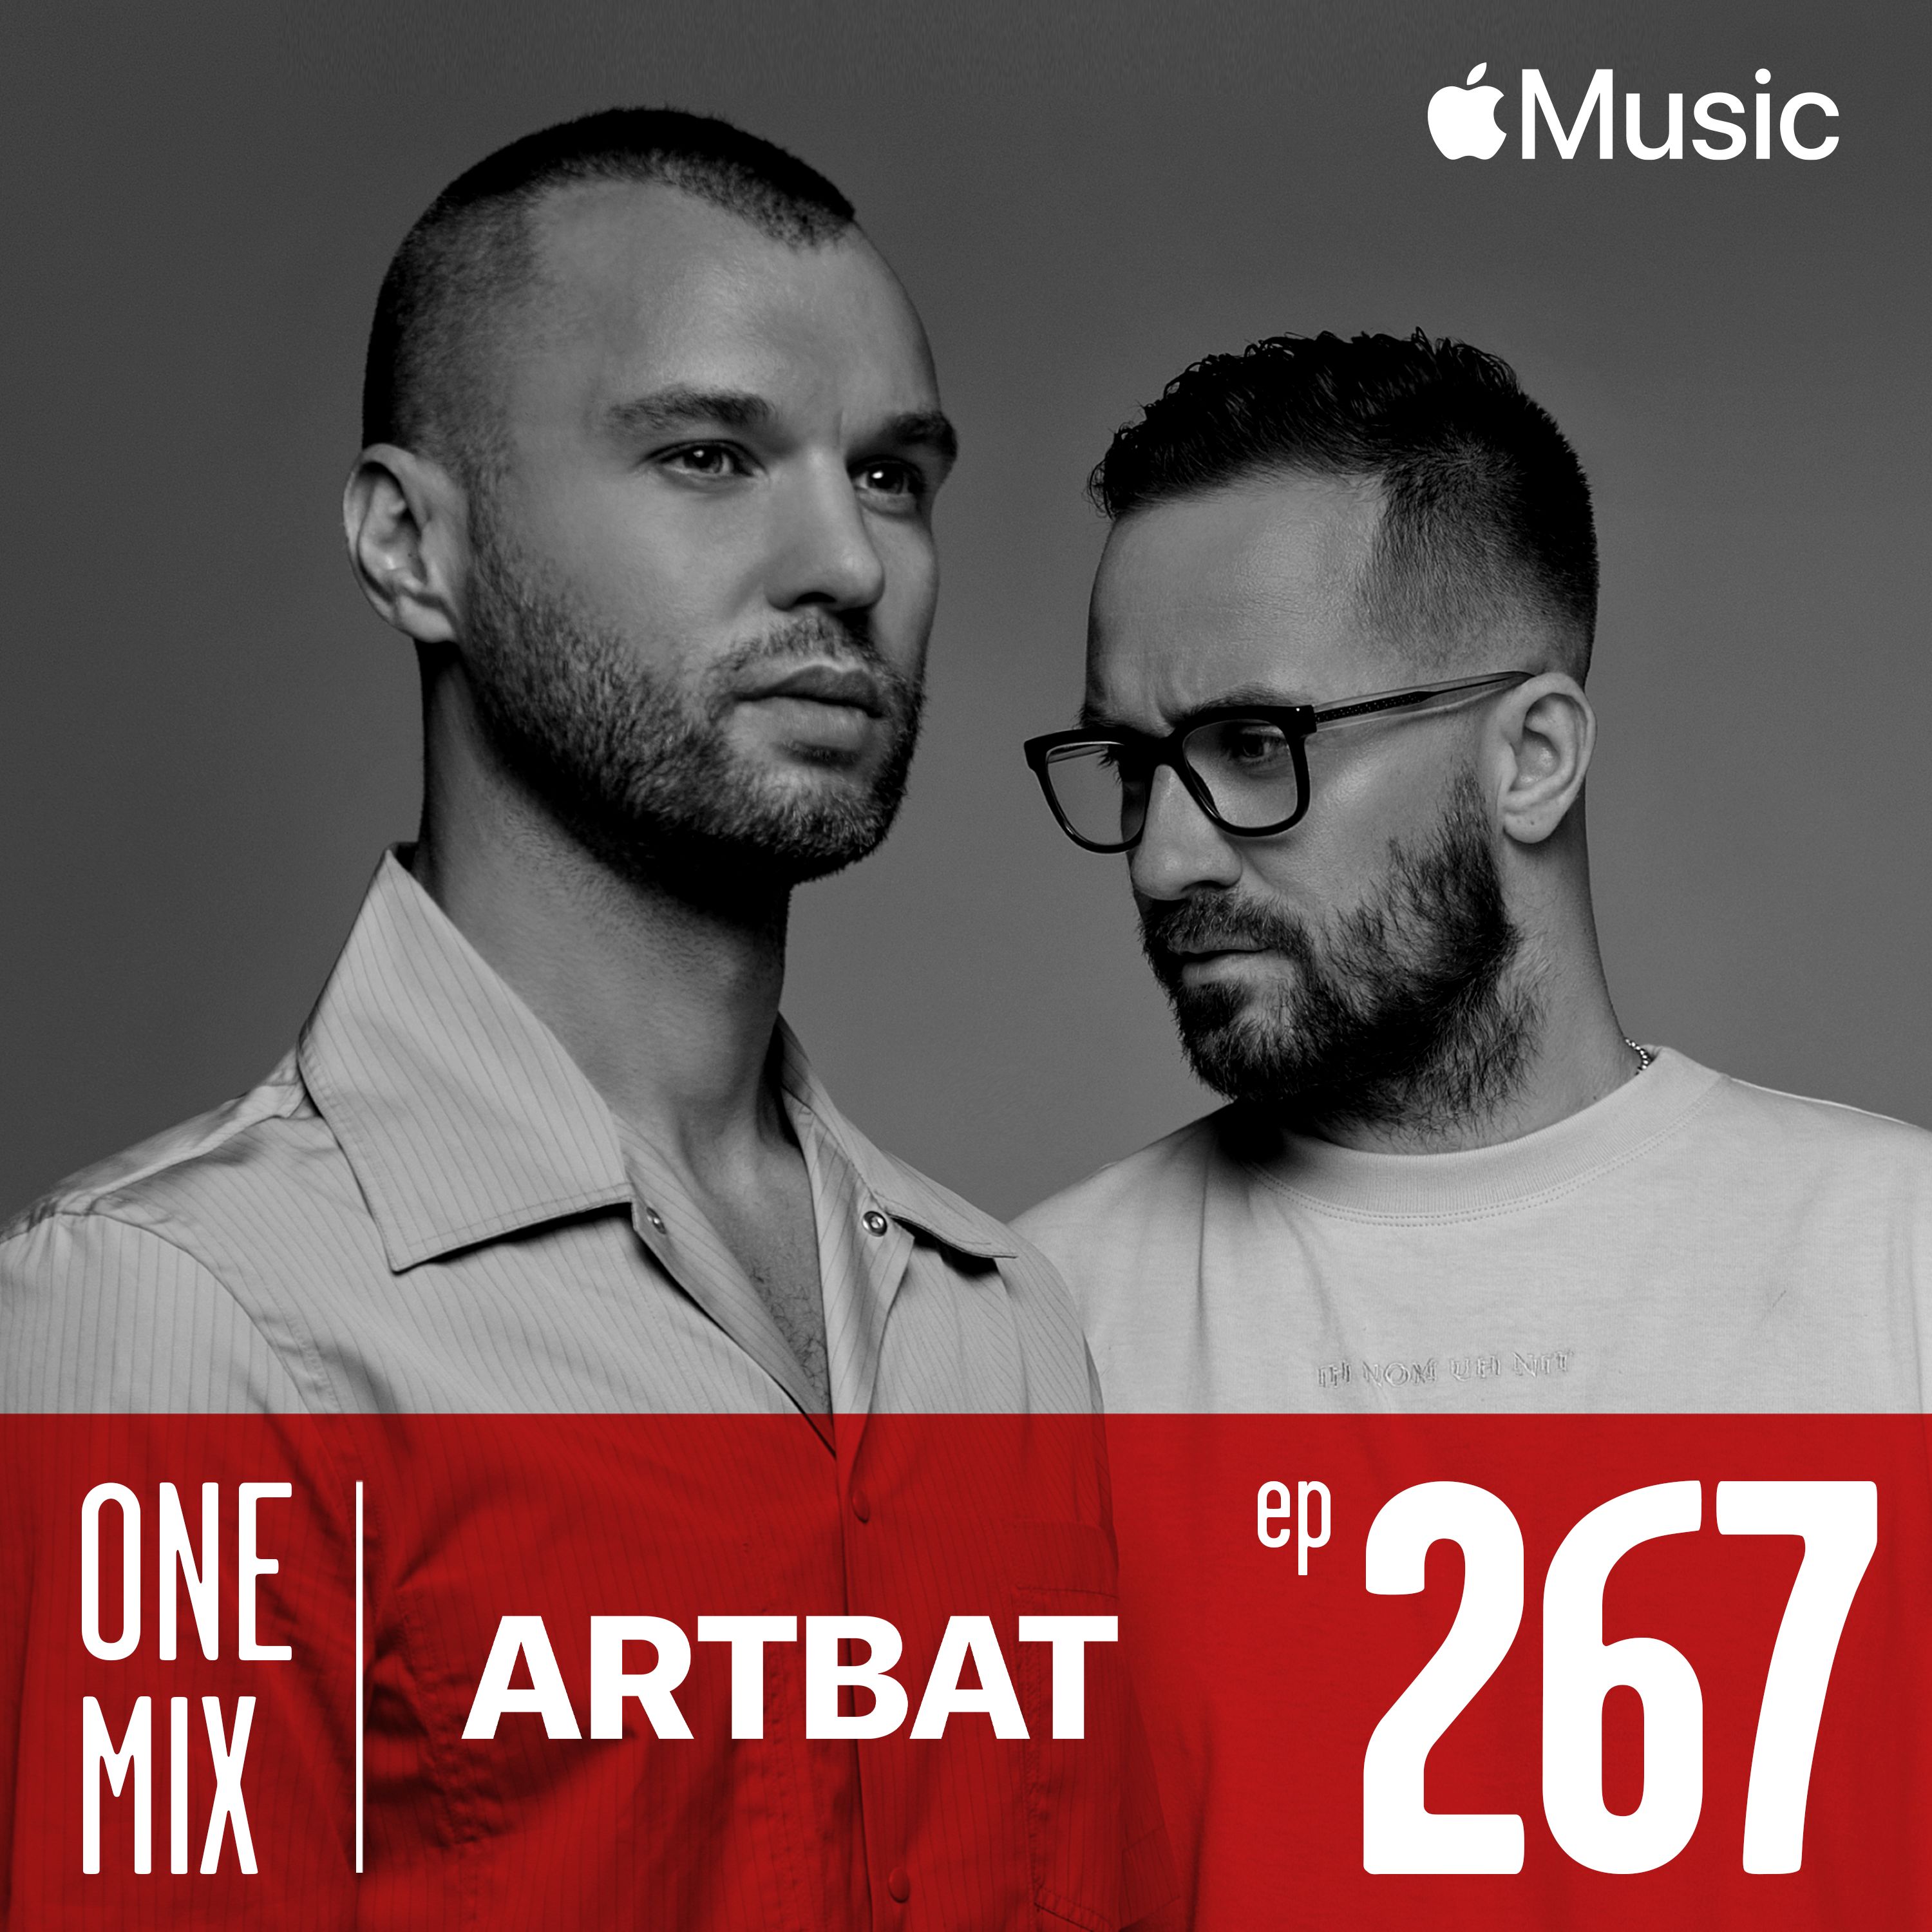 ডাউনলোড করুন One Mix with ARTBAT | #267 Apple Music